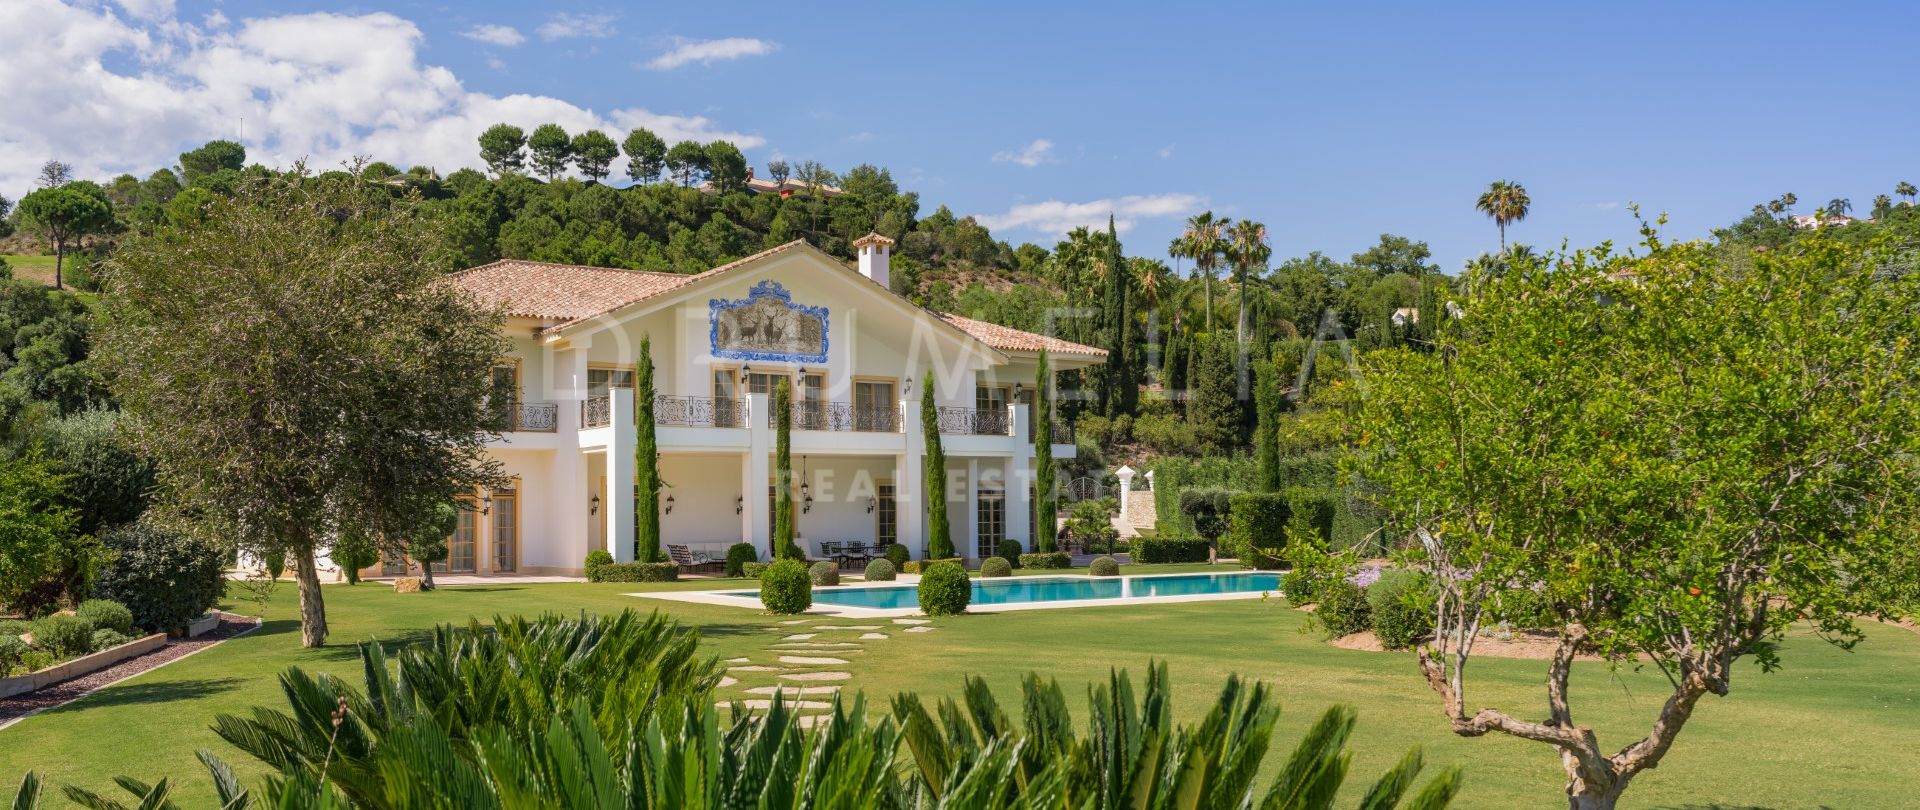 Prächtige Villa im mediterranen Stil für luxuriöses Wohnen in der Nobelgegend La Zagaleta, Benahavis.